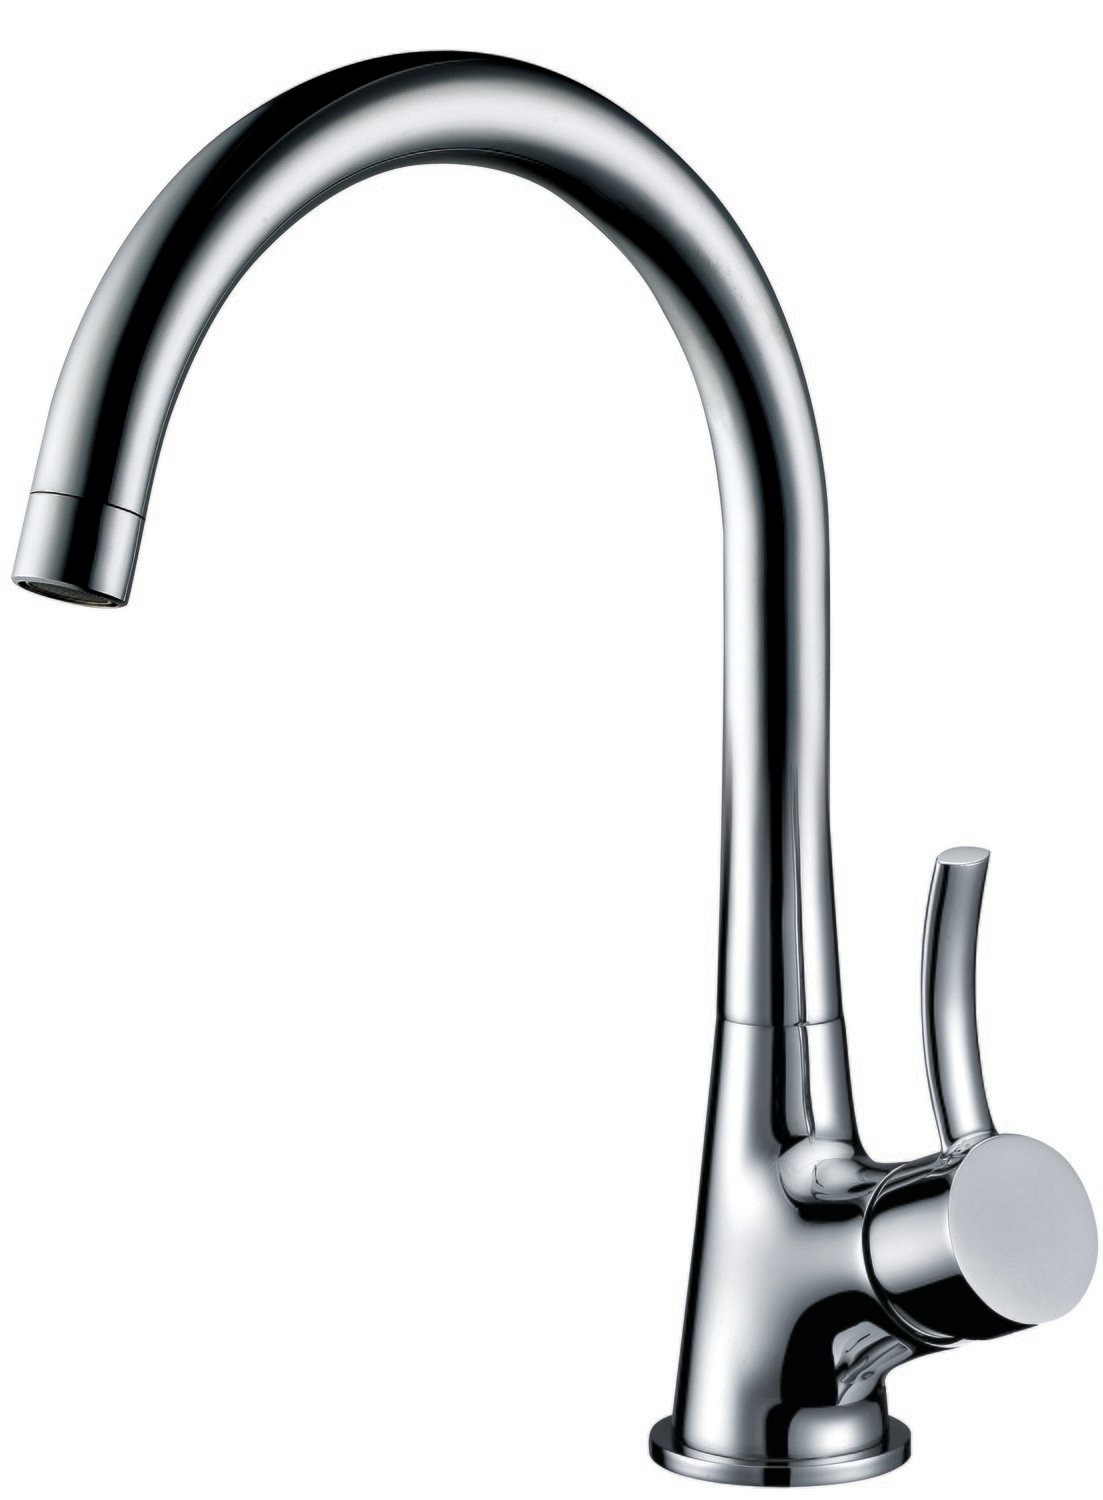 Single-lever bar faucet